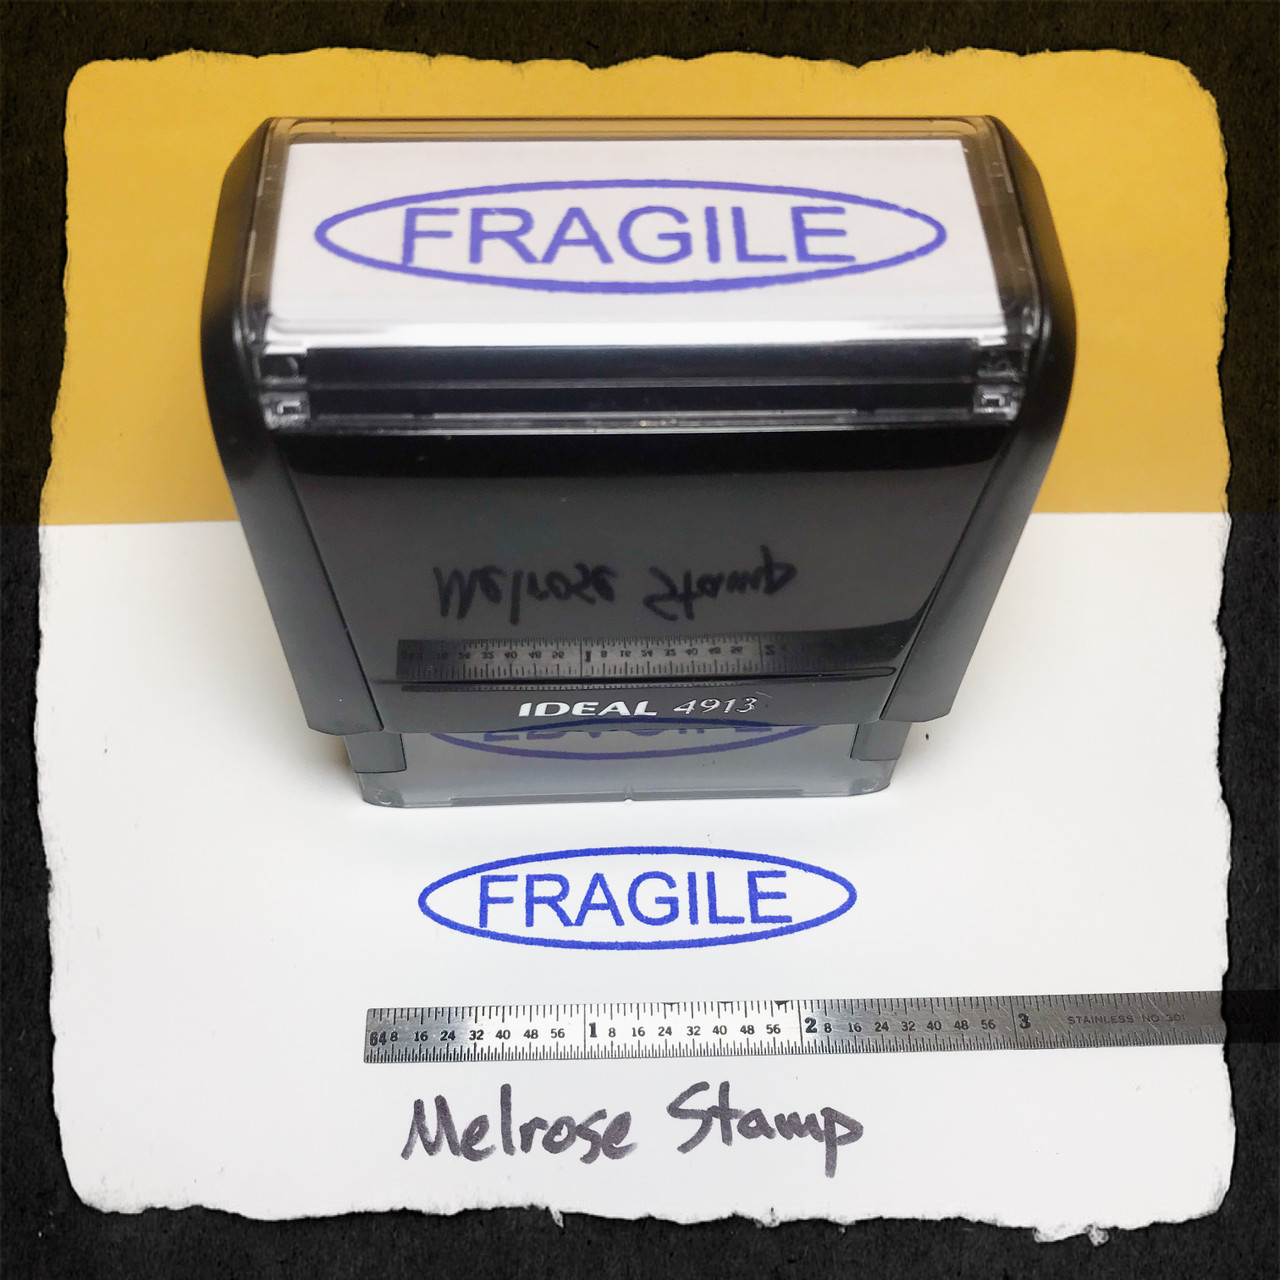 Fragile Stamp In Oval Stamp Blue Ink Large